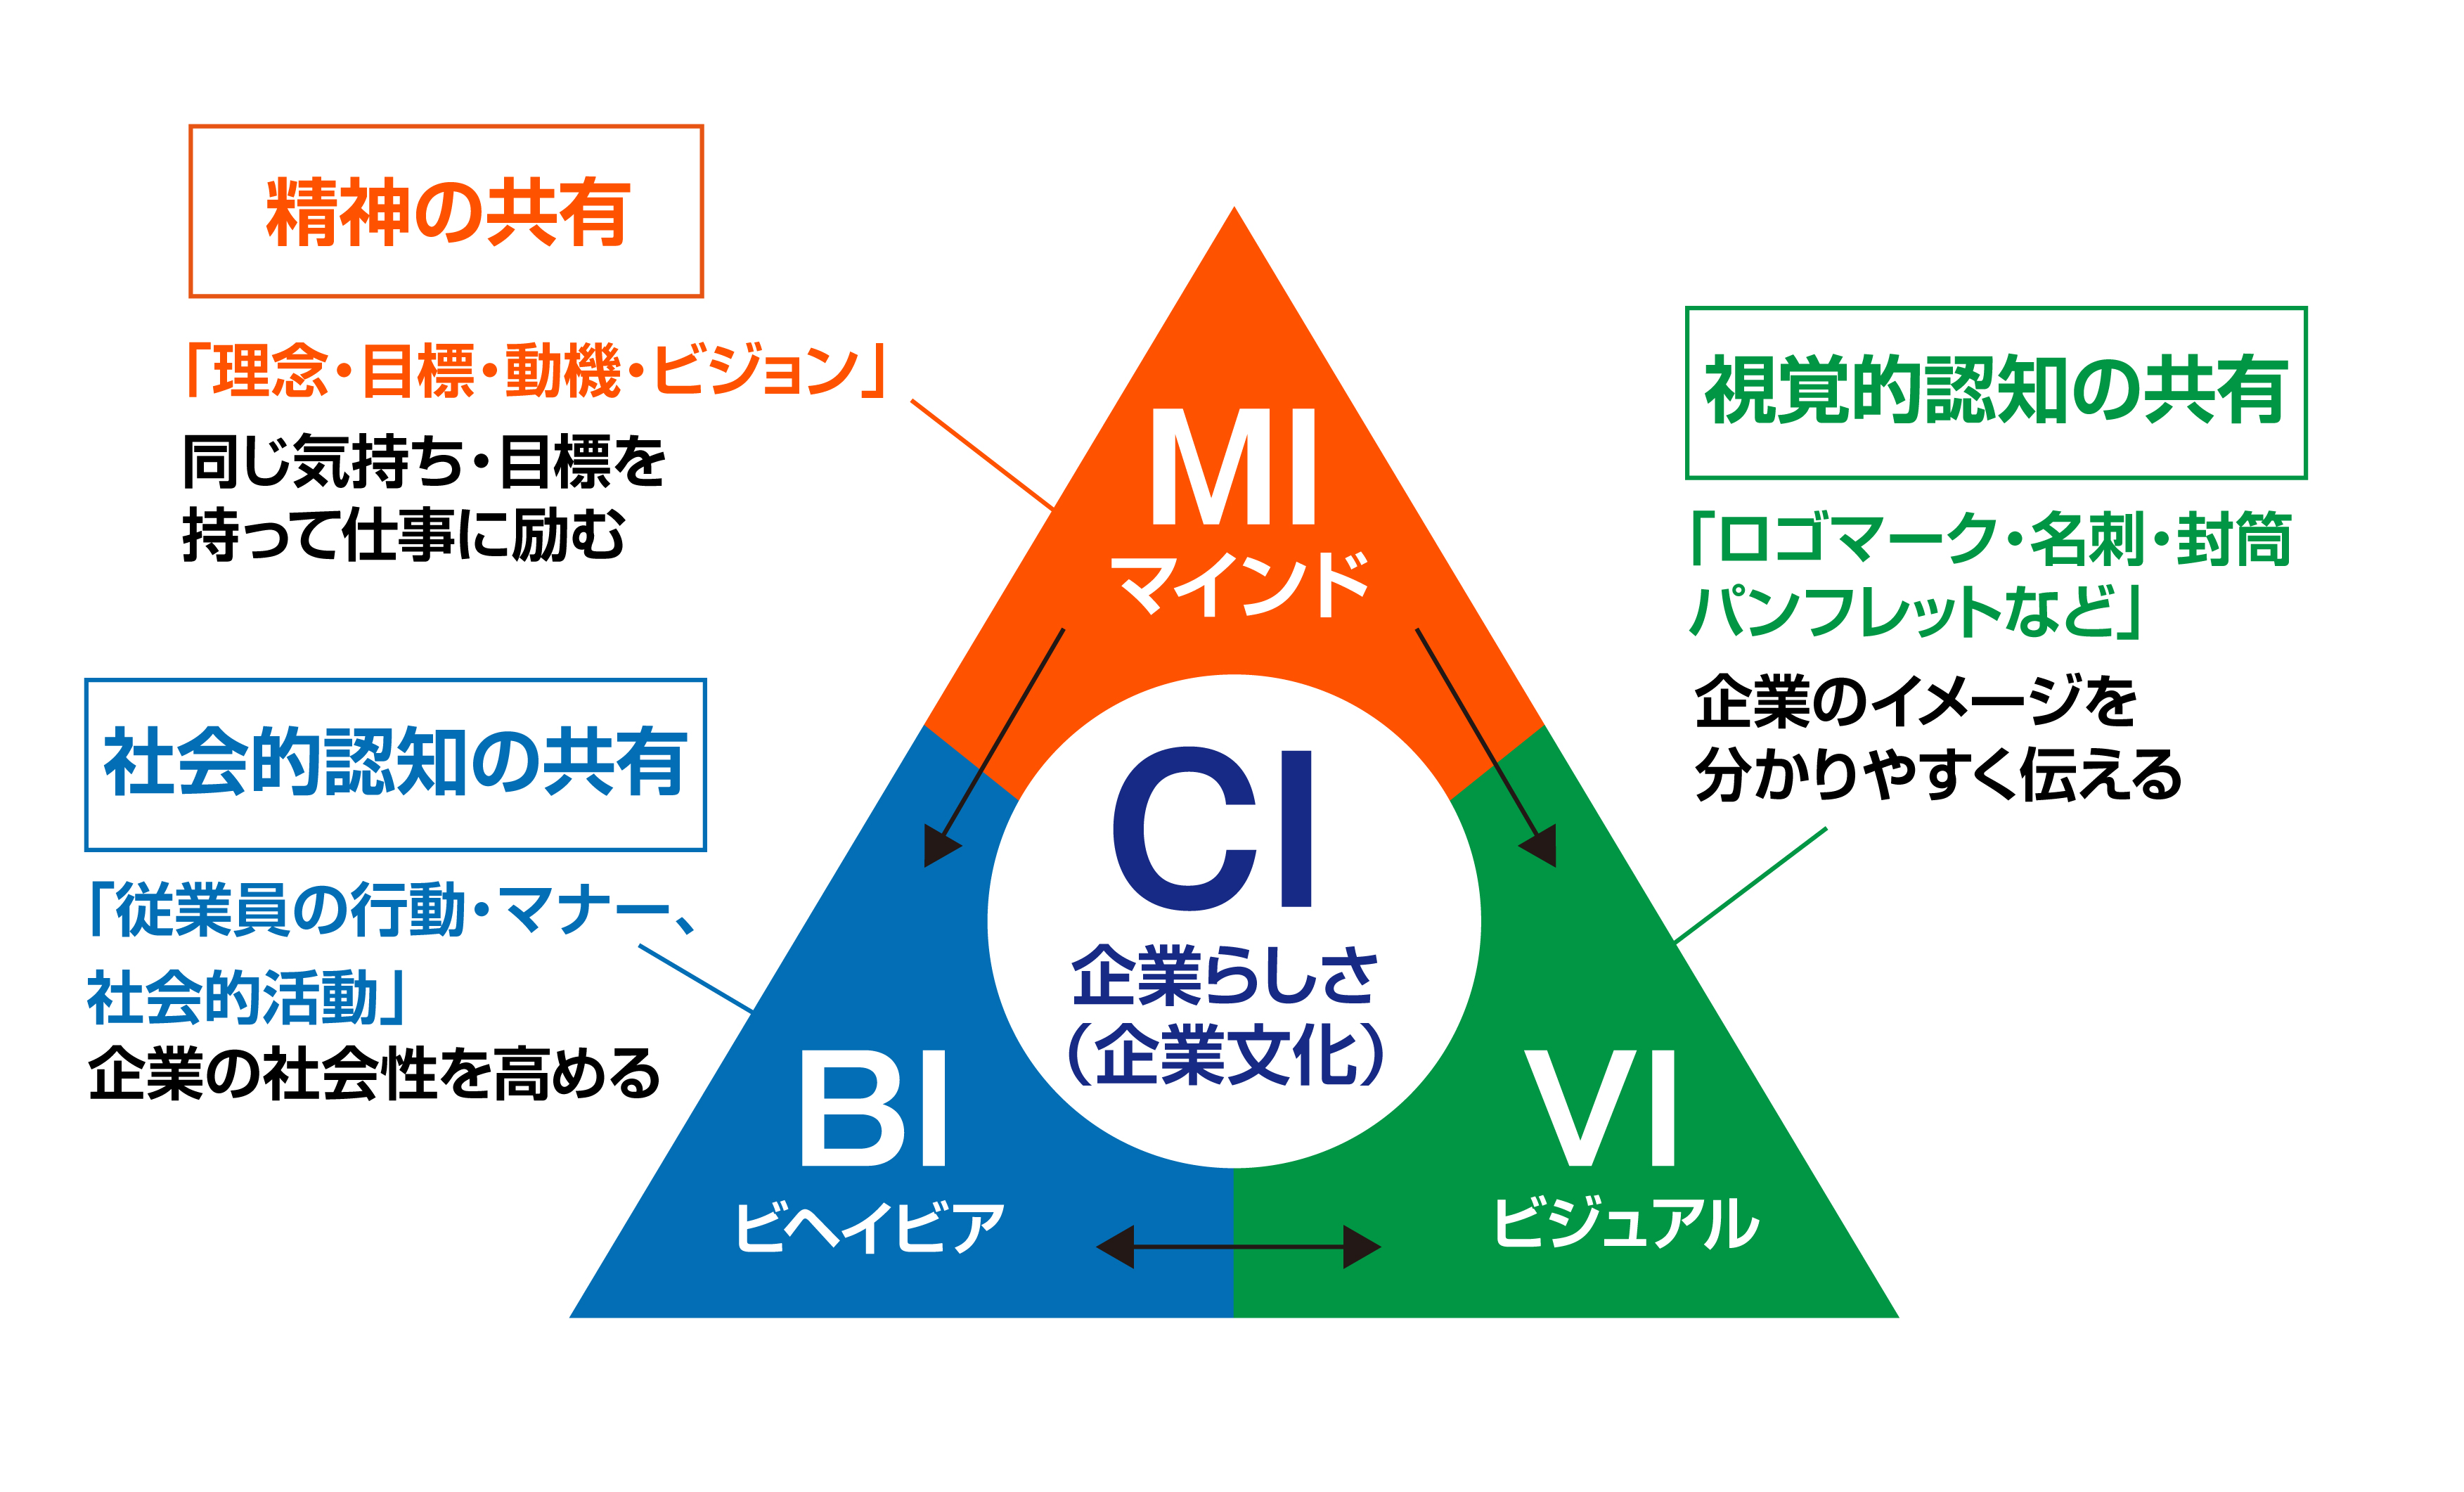 【No.10】風林火山用図-B.jpg